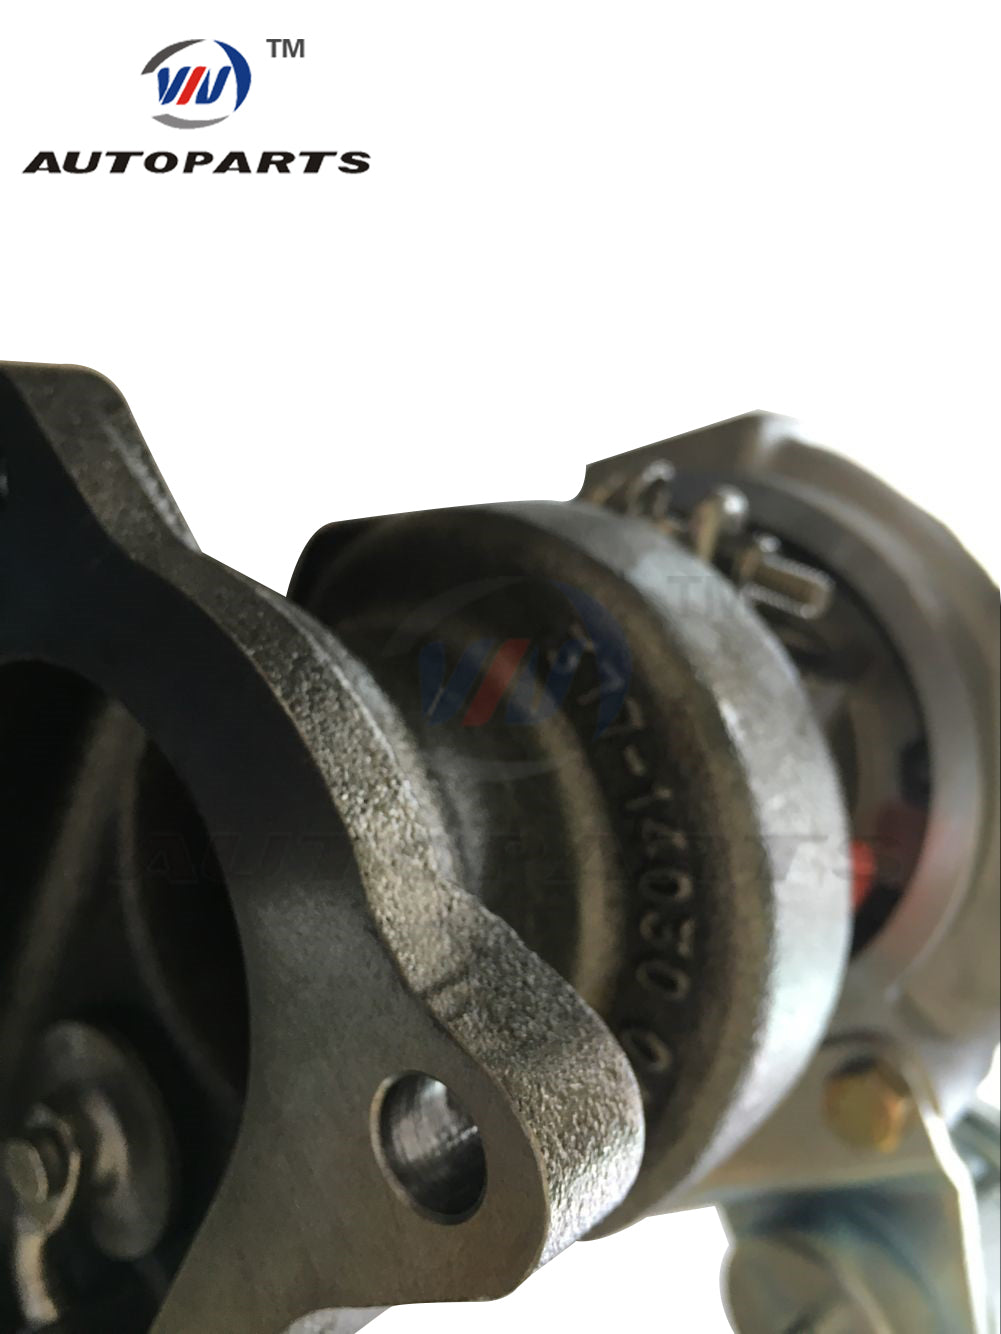 Turbocharger TD04L 49377-04300 04100 for Subaru Forester Impreza 2.0L Gasoline Engine